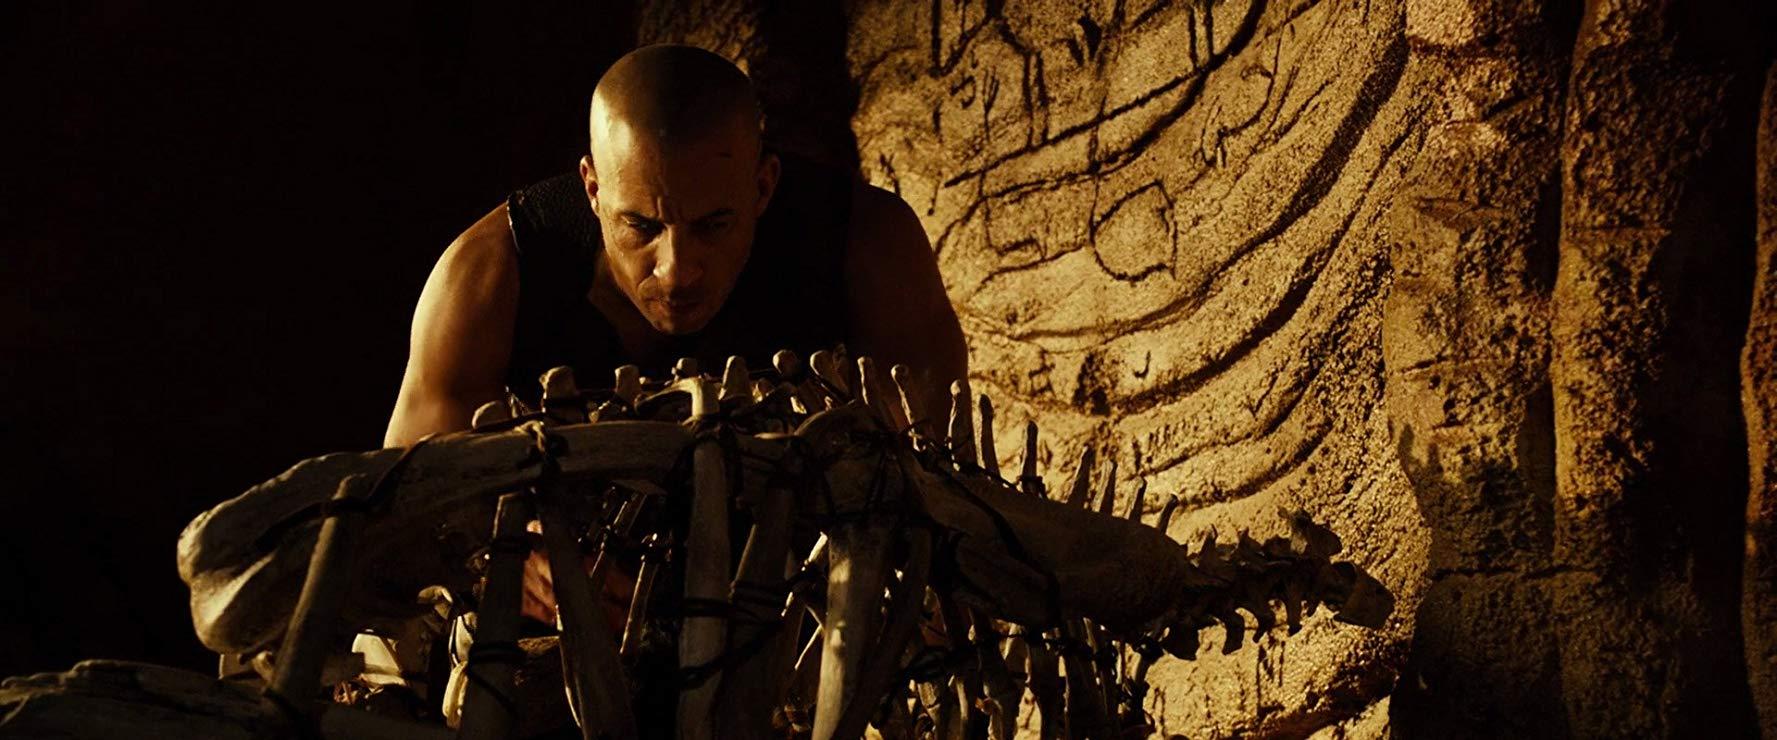 مشاهدة فيلم Riddick (2013) مترجم